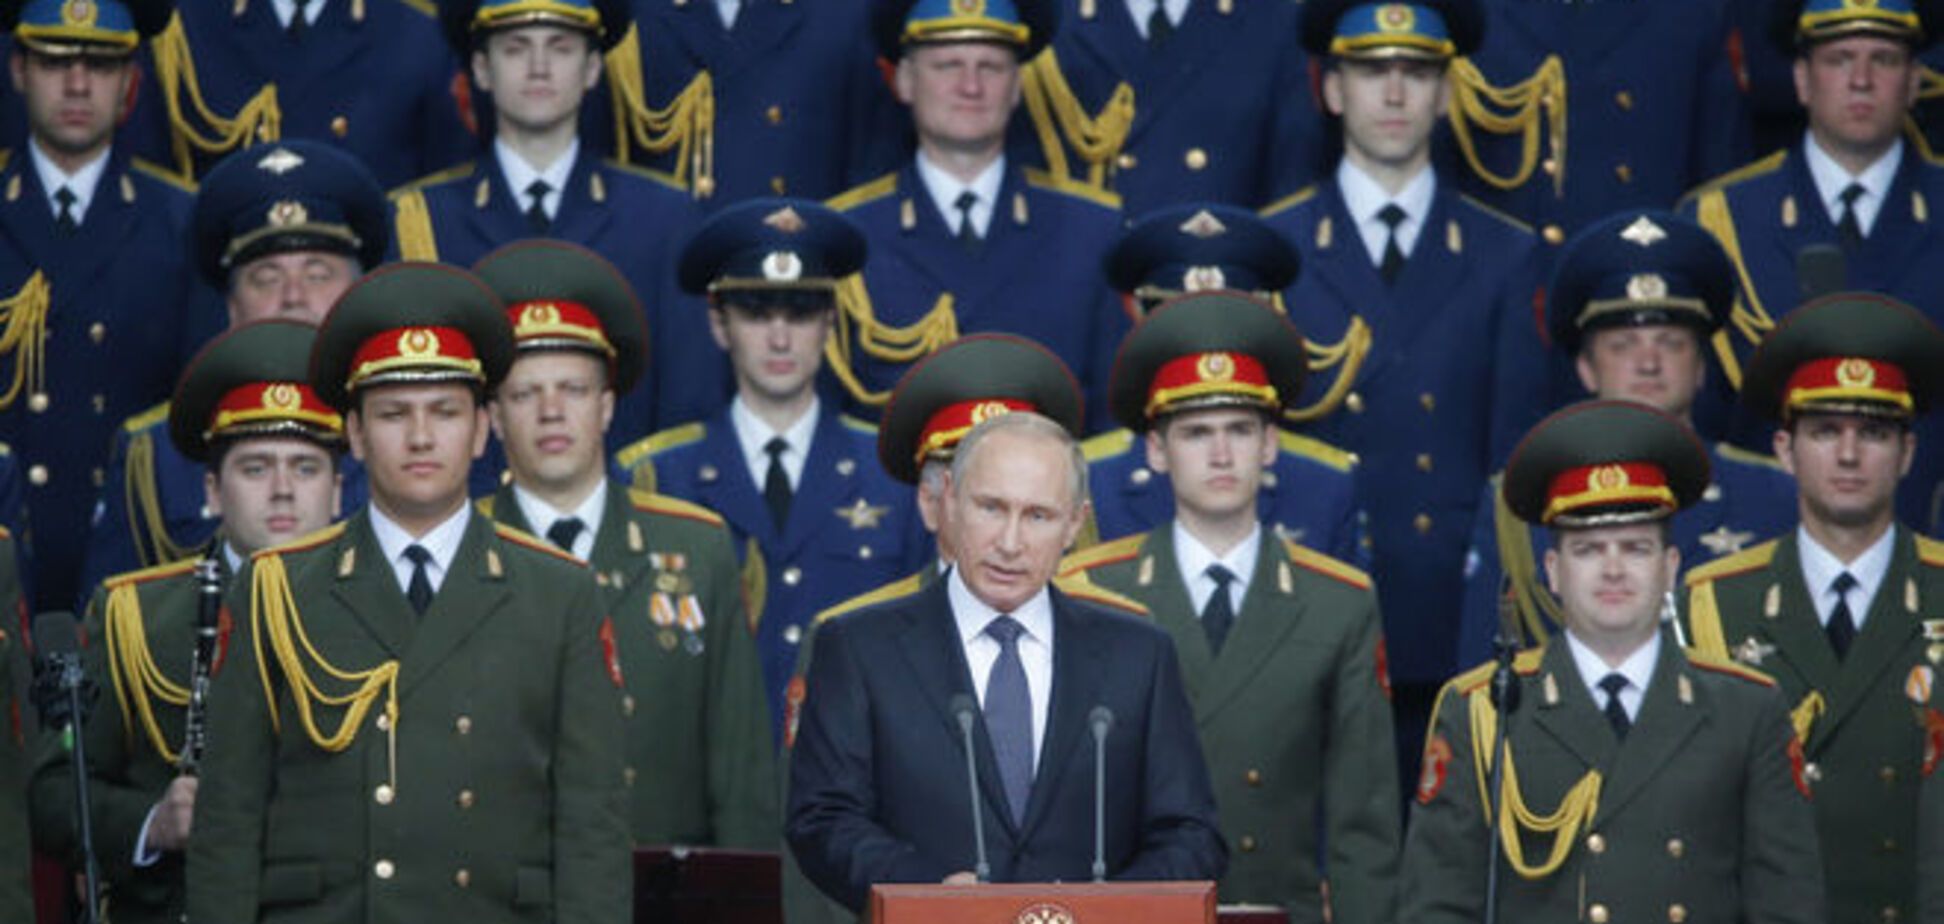 Кремль розглядає конфлікт в Україні як частину світової війни - Фельгенгауер